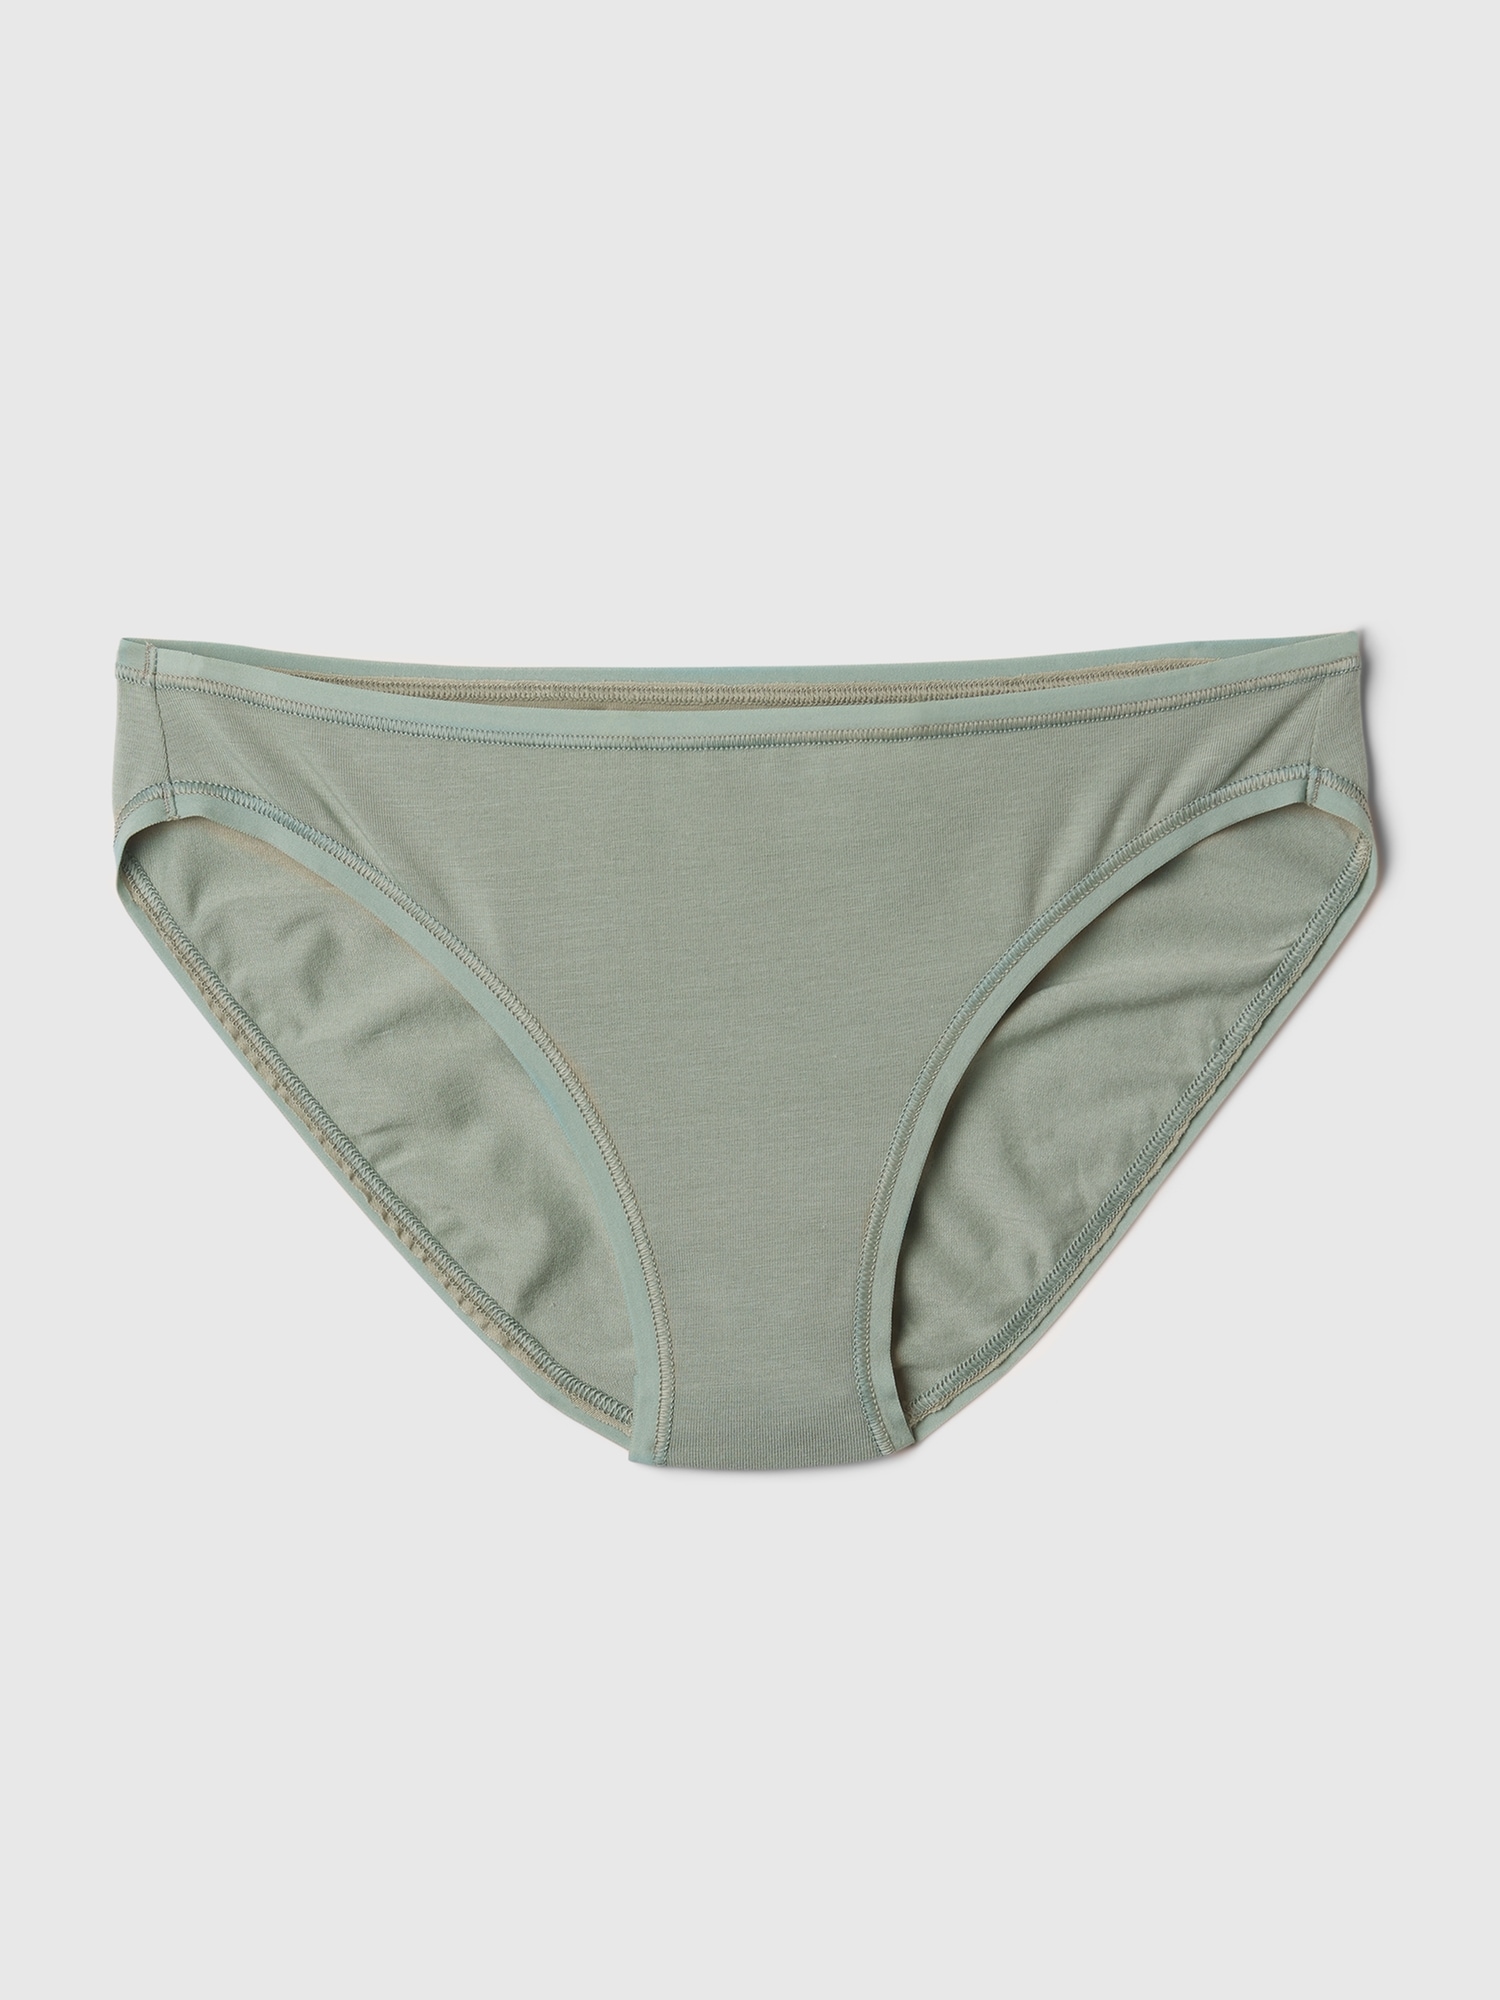 Lynn&Light Underwear Panties Knickers New Underwear Women'S Cotton